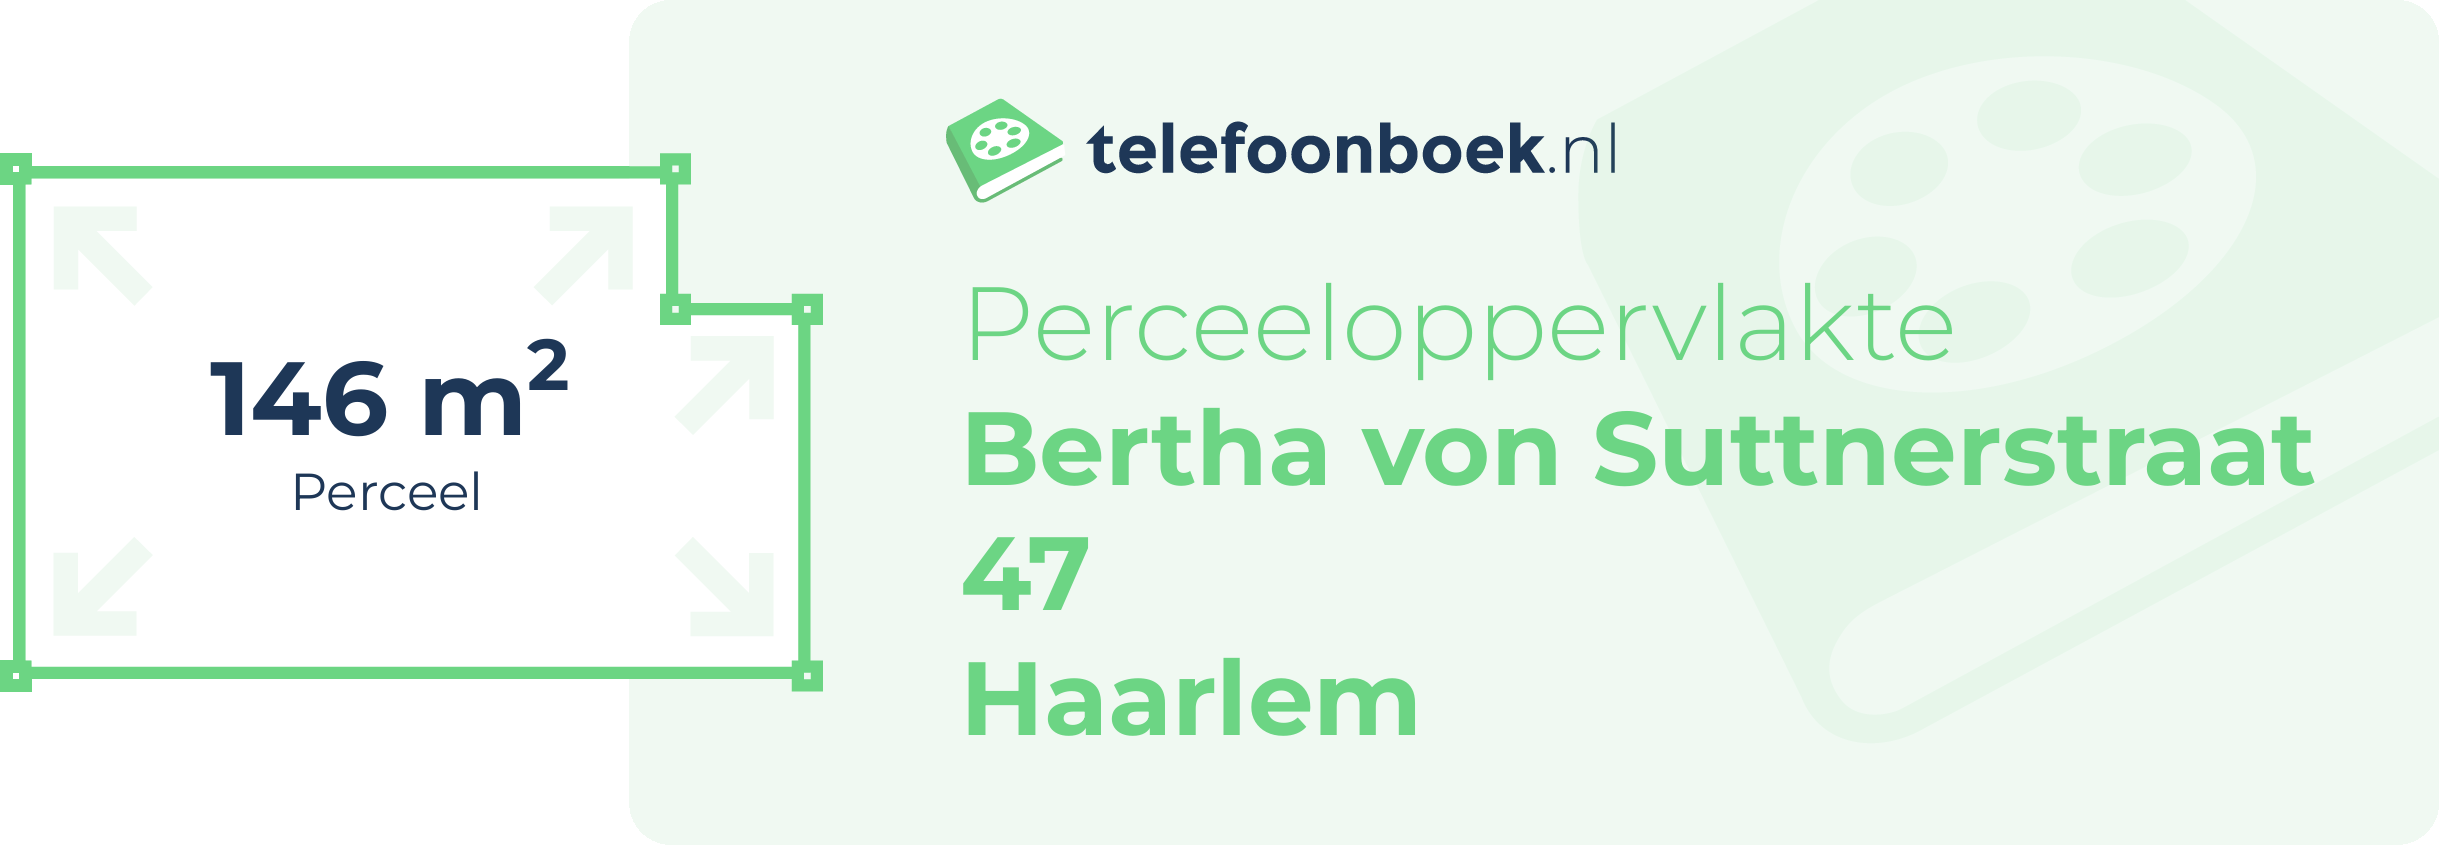 Perceeloppervlakte Bertha Von Suttnerstraat 47 Haarlem